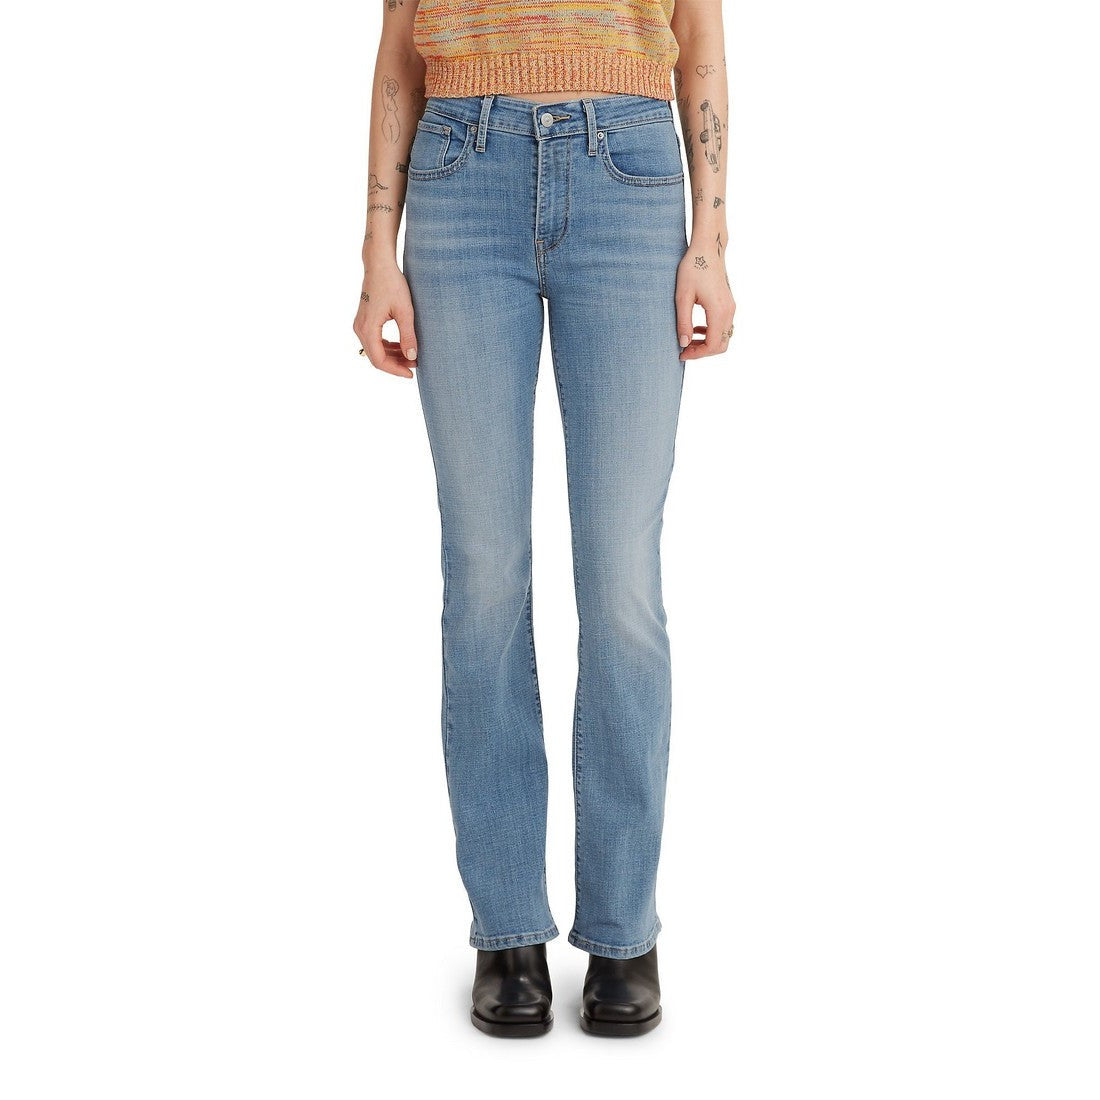 Levi Women's 725 Heritage Bootcut Zip Jeans - Wait Up (Vintage Light/M